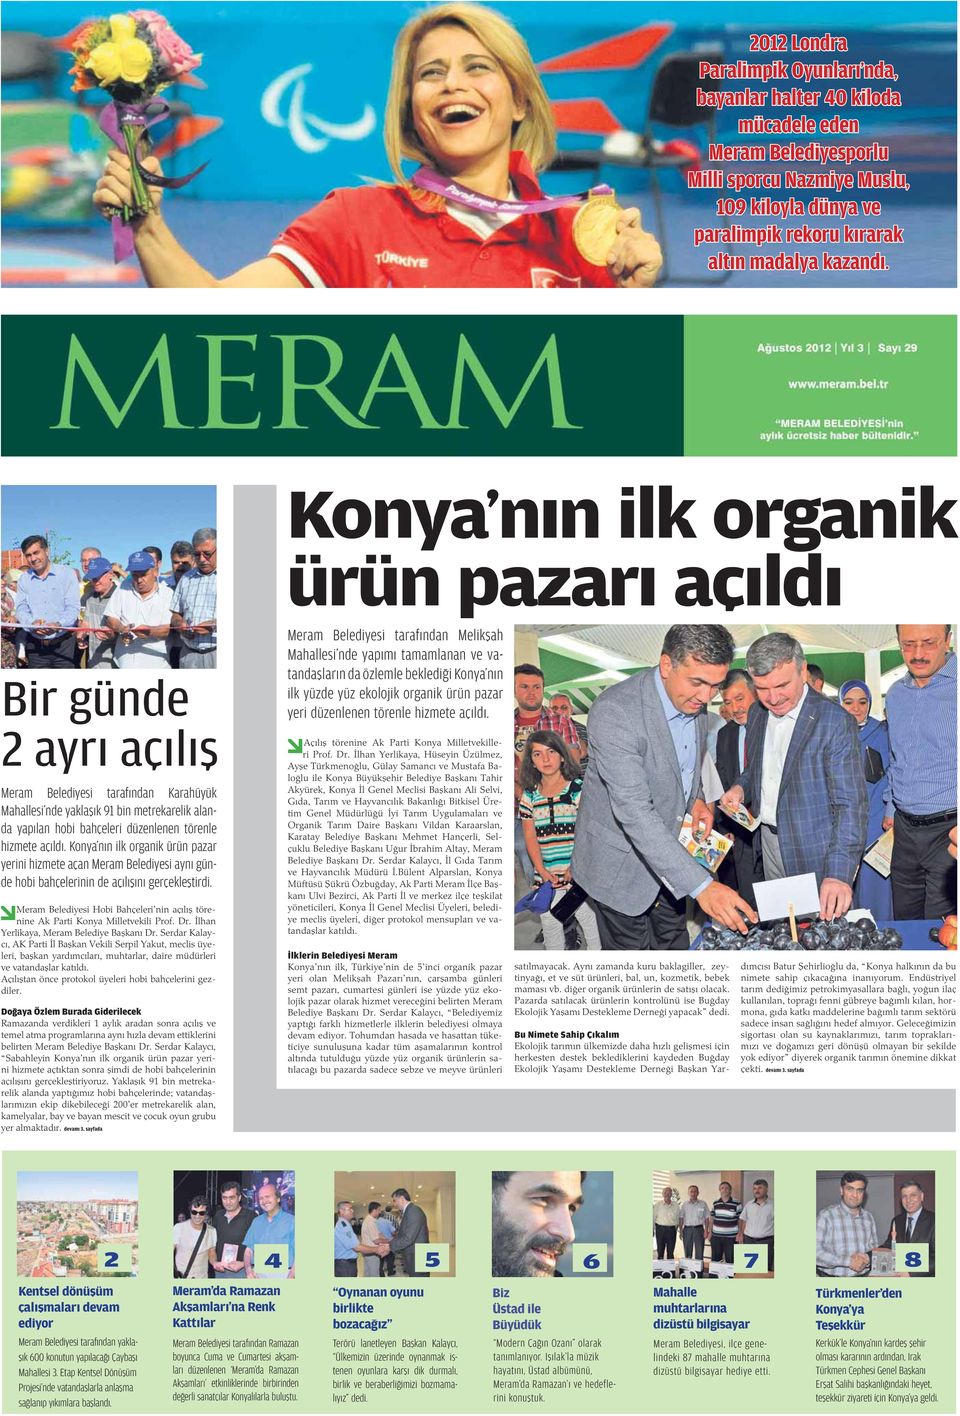 hizmete açıldı. Konya nın ilk organik ürün pazar yerini hizmete açan Meram Belediyesi aynı günde hobi bahçelerinin de açılı ını gerçekle tirdi.